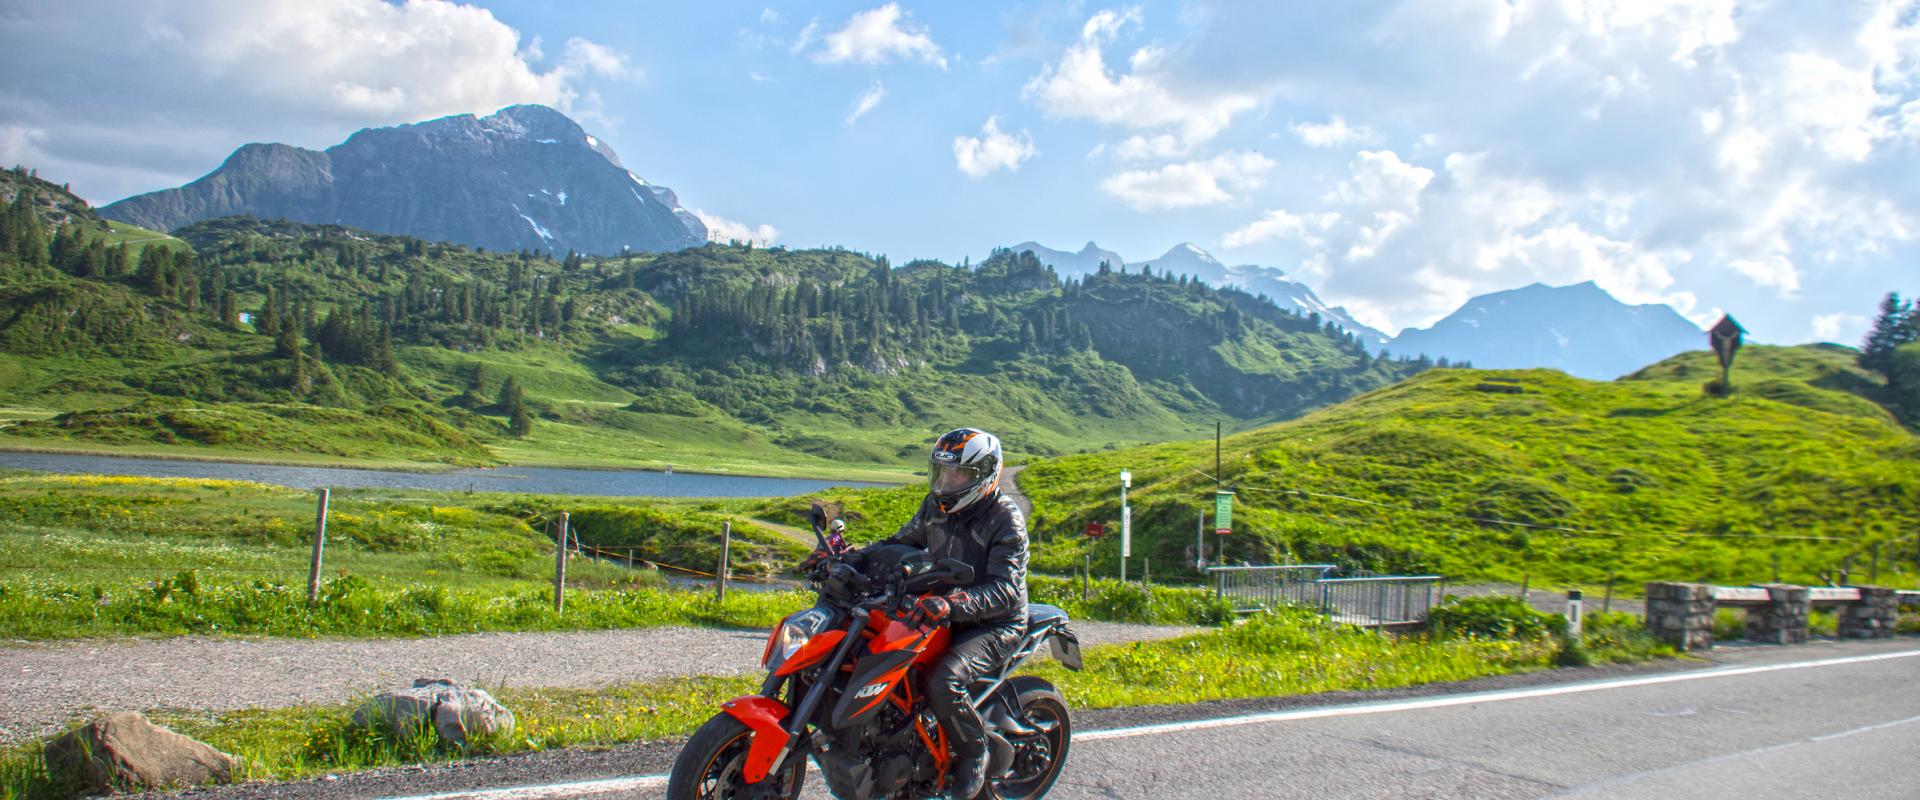 Motorradfahrer auf dem Hochtannbergpass, mit See, grünen Wiesen und Bergen im Hintergrund